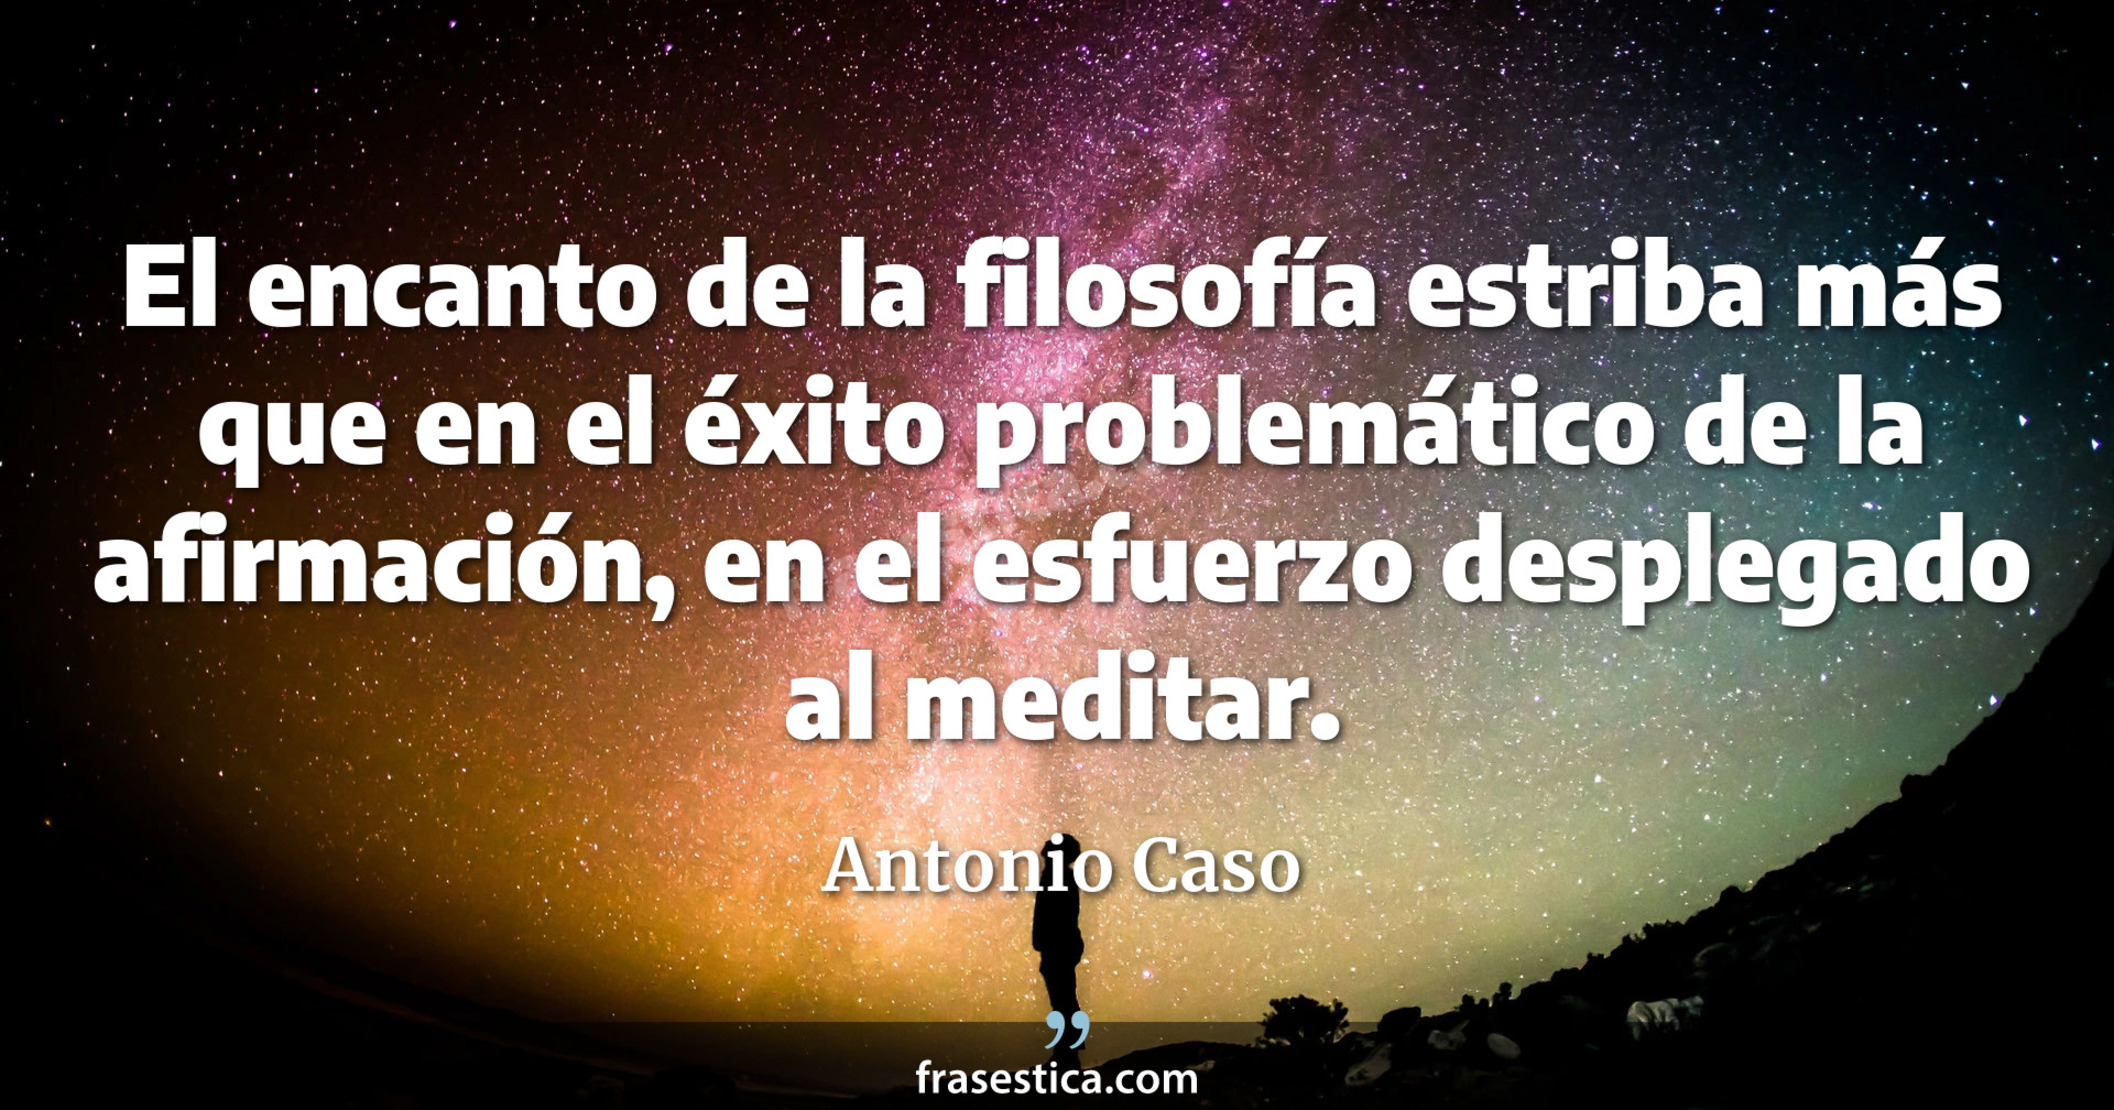 El encanto de la filosofía estriba más que en el éxito problemático de la afirmación, en el esfuerzo desplegado al meditar. - Antonio Caso